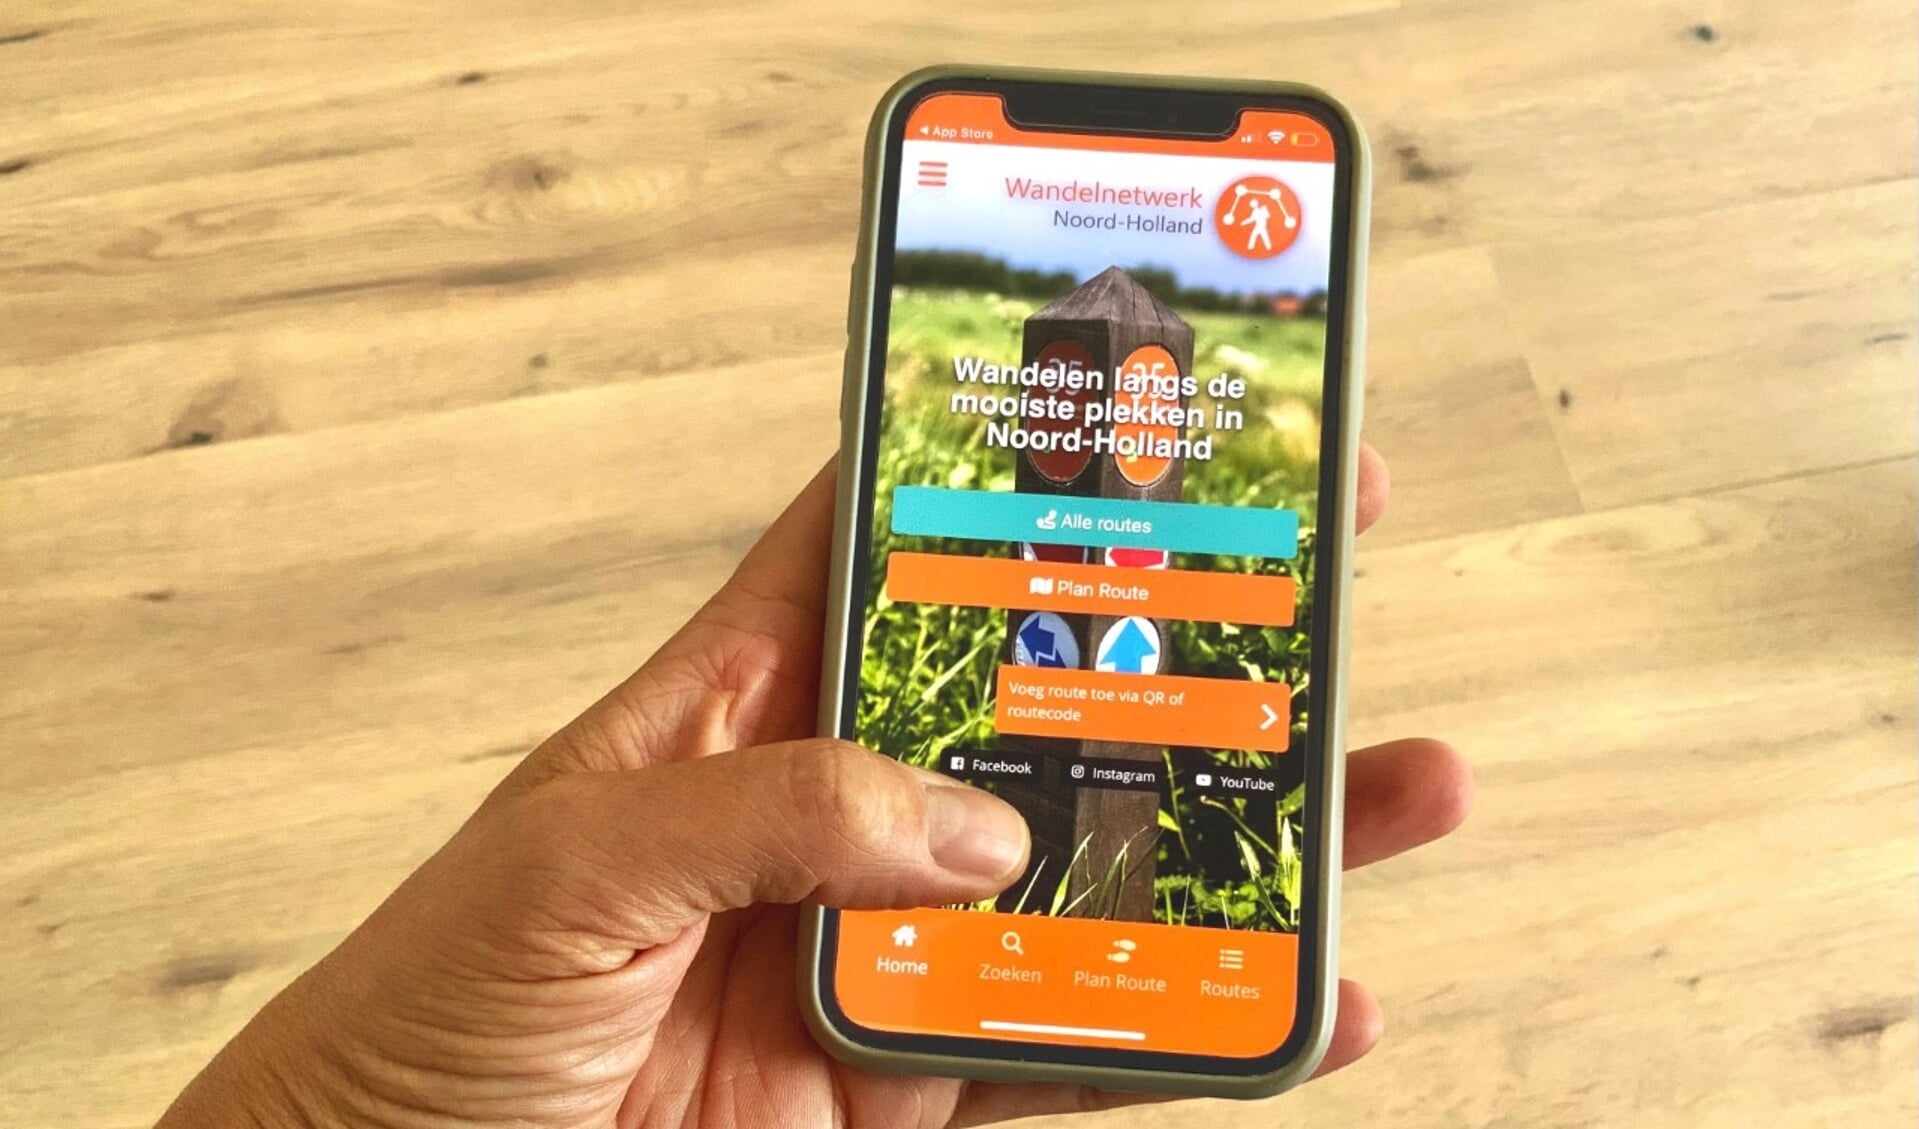 Wandelnetwerk Noord-Holland lanceert
vernieuwde website en app.
